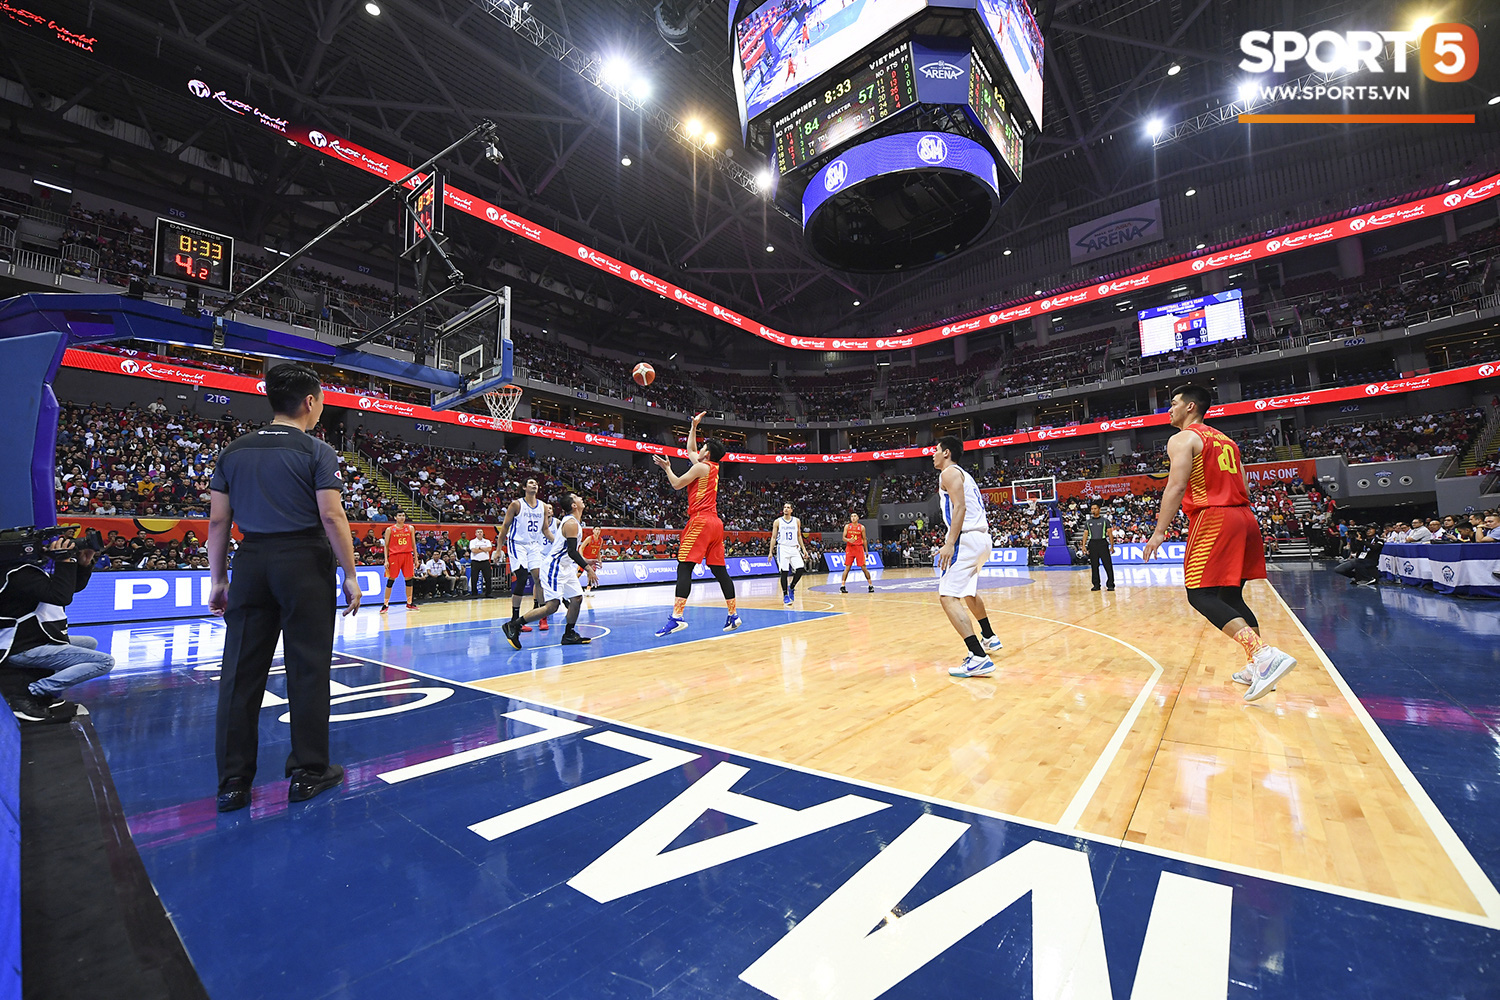 Choáng ngợp trước vẻ hào nhoáng của nhà thi đấu và sức ép từ 15.000 CĐV chủ nhà Philippines mà tuyển bóng rổ Việt Nam phải đối mặt - Ảnh 5.